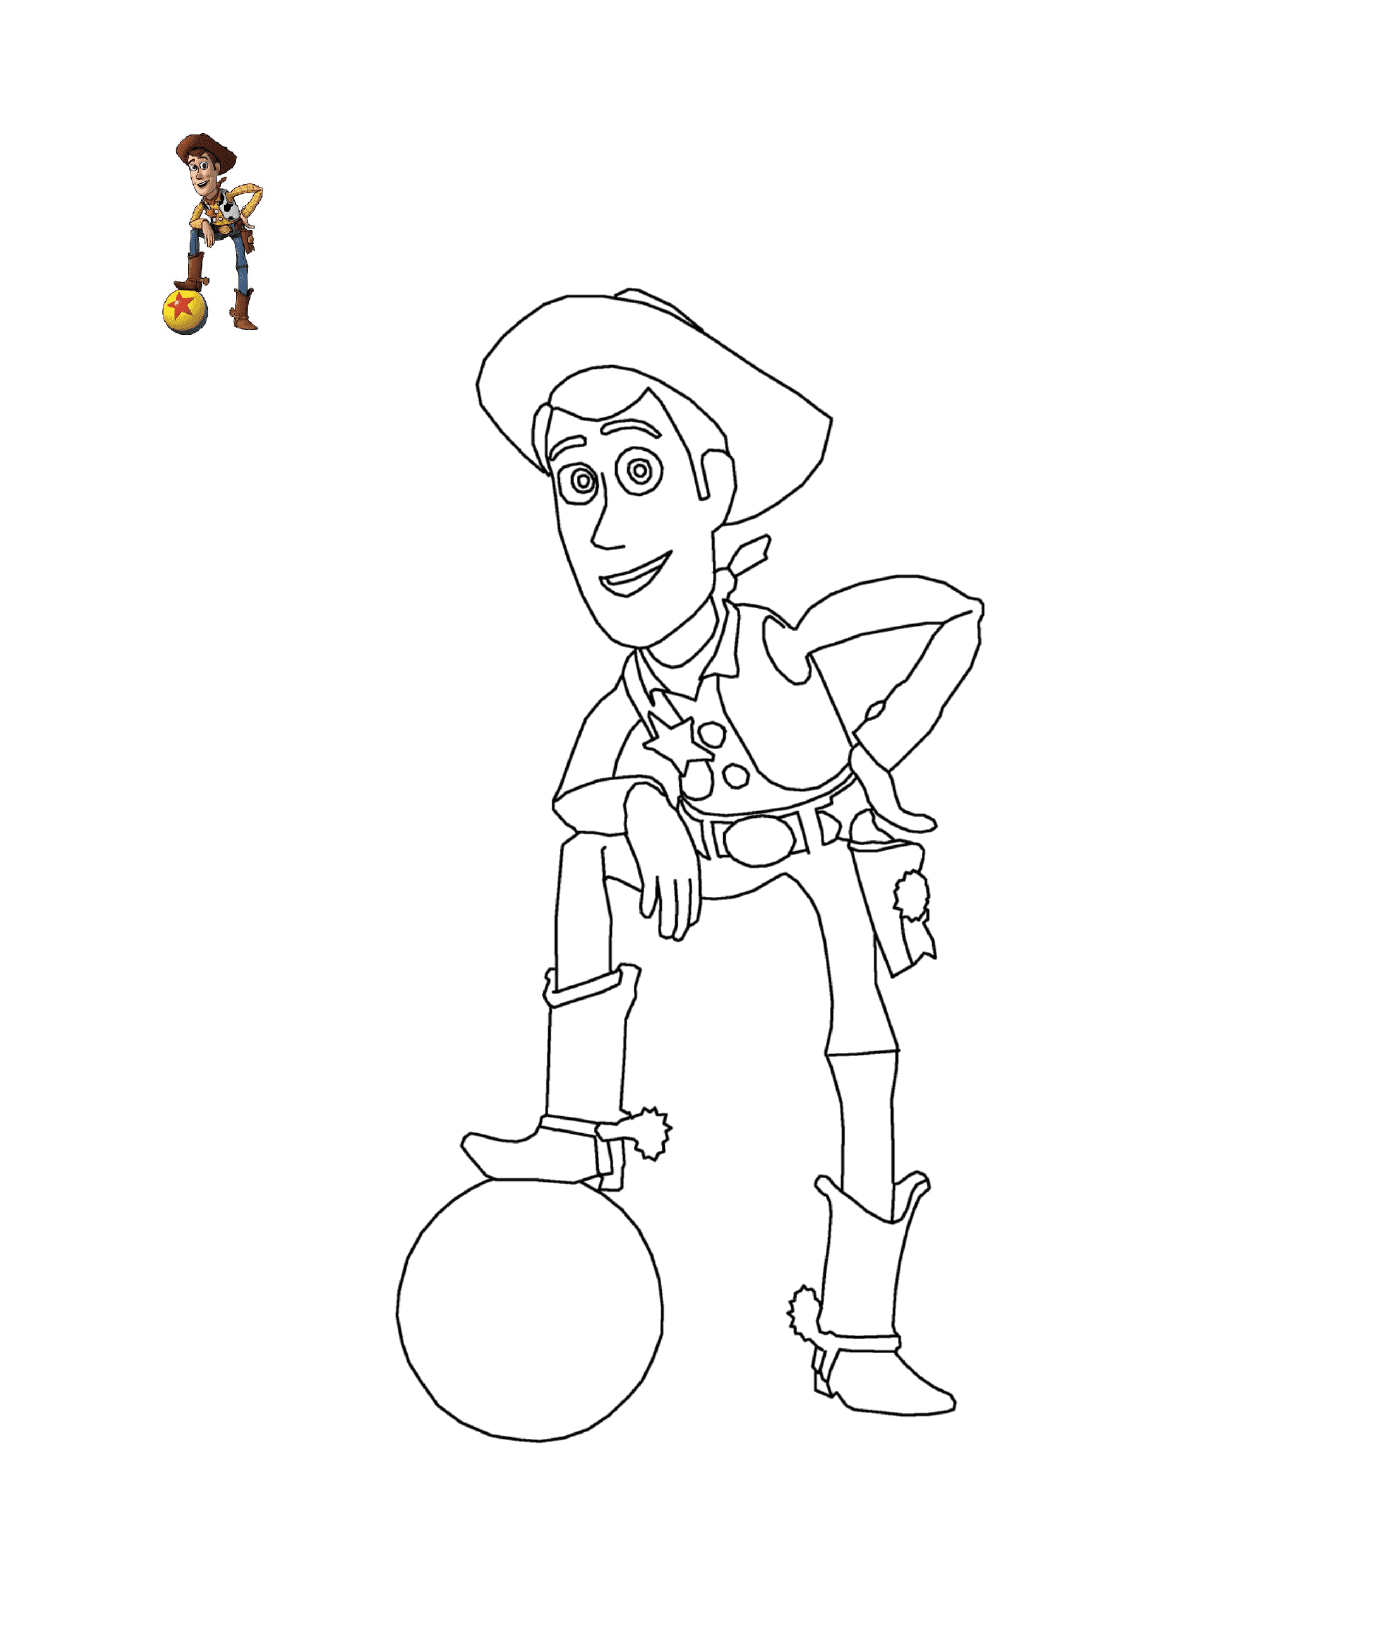  Sheriff Woody von Disney Toy Story 